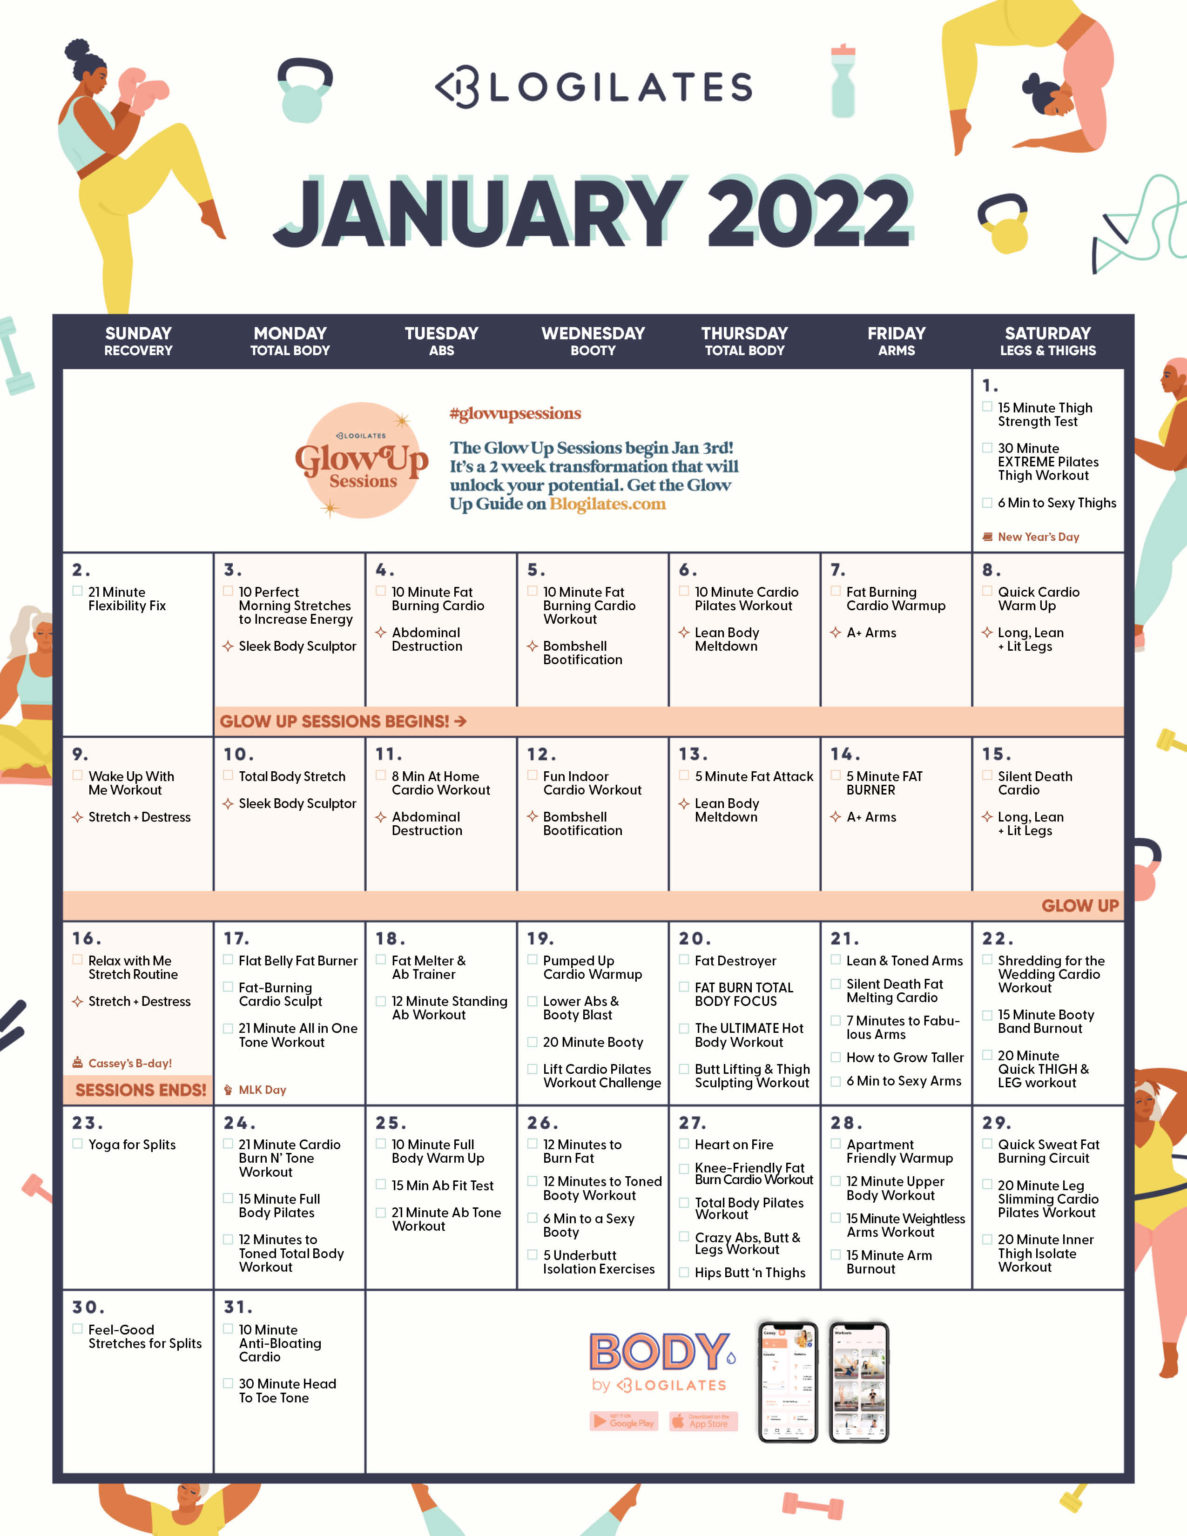 The Blogilates January 2022 Workout Calendar! Blogilates